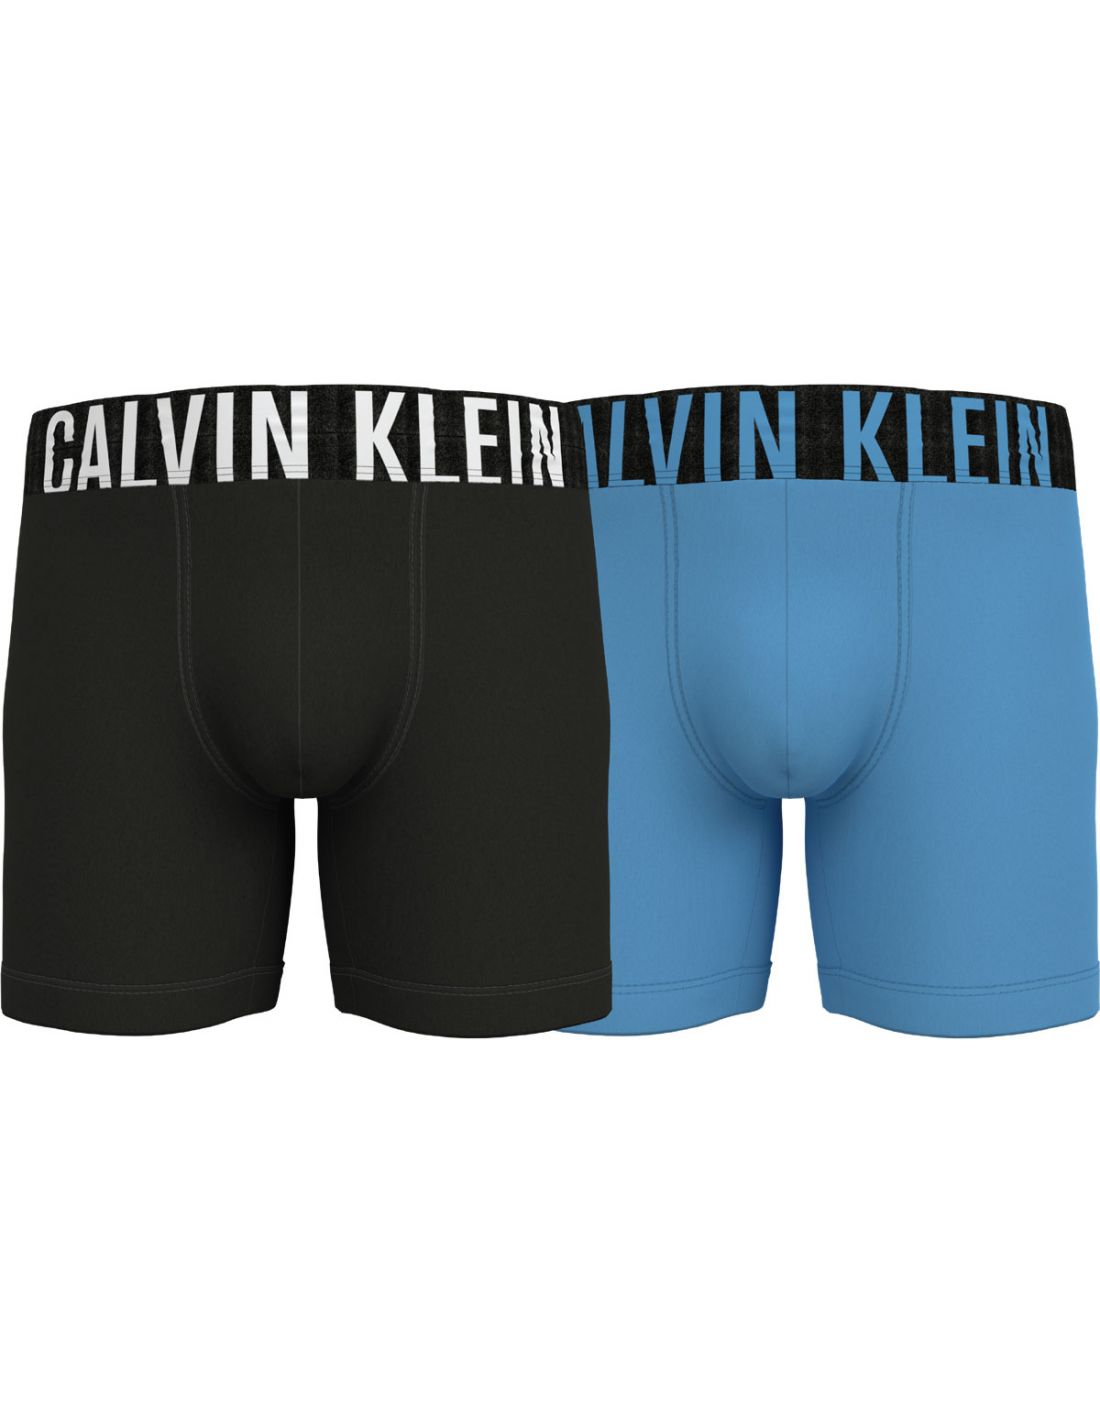 binair erts Onweersbui Calvin Klein Ondergoed Heren Boxershort 2Pack Black Signature Blue 2PK